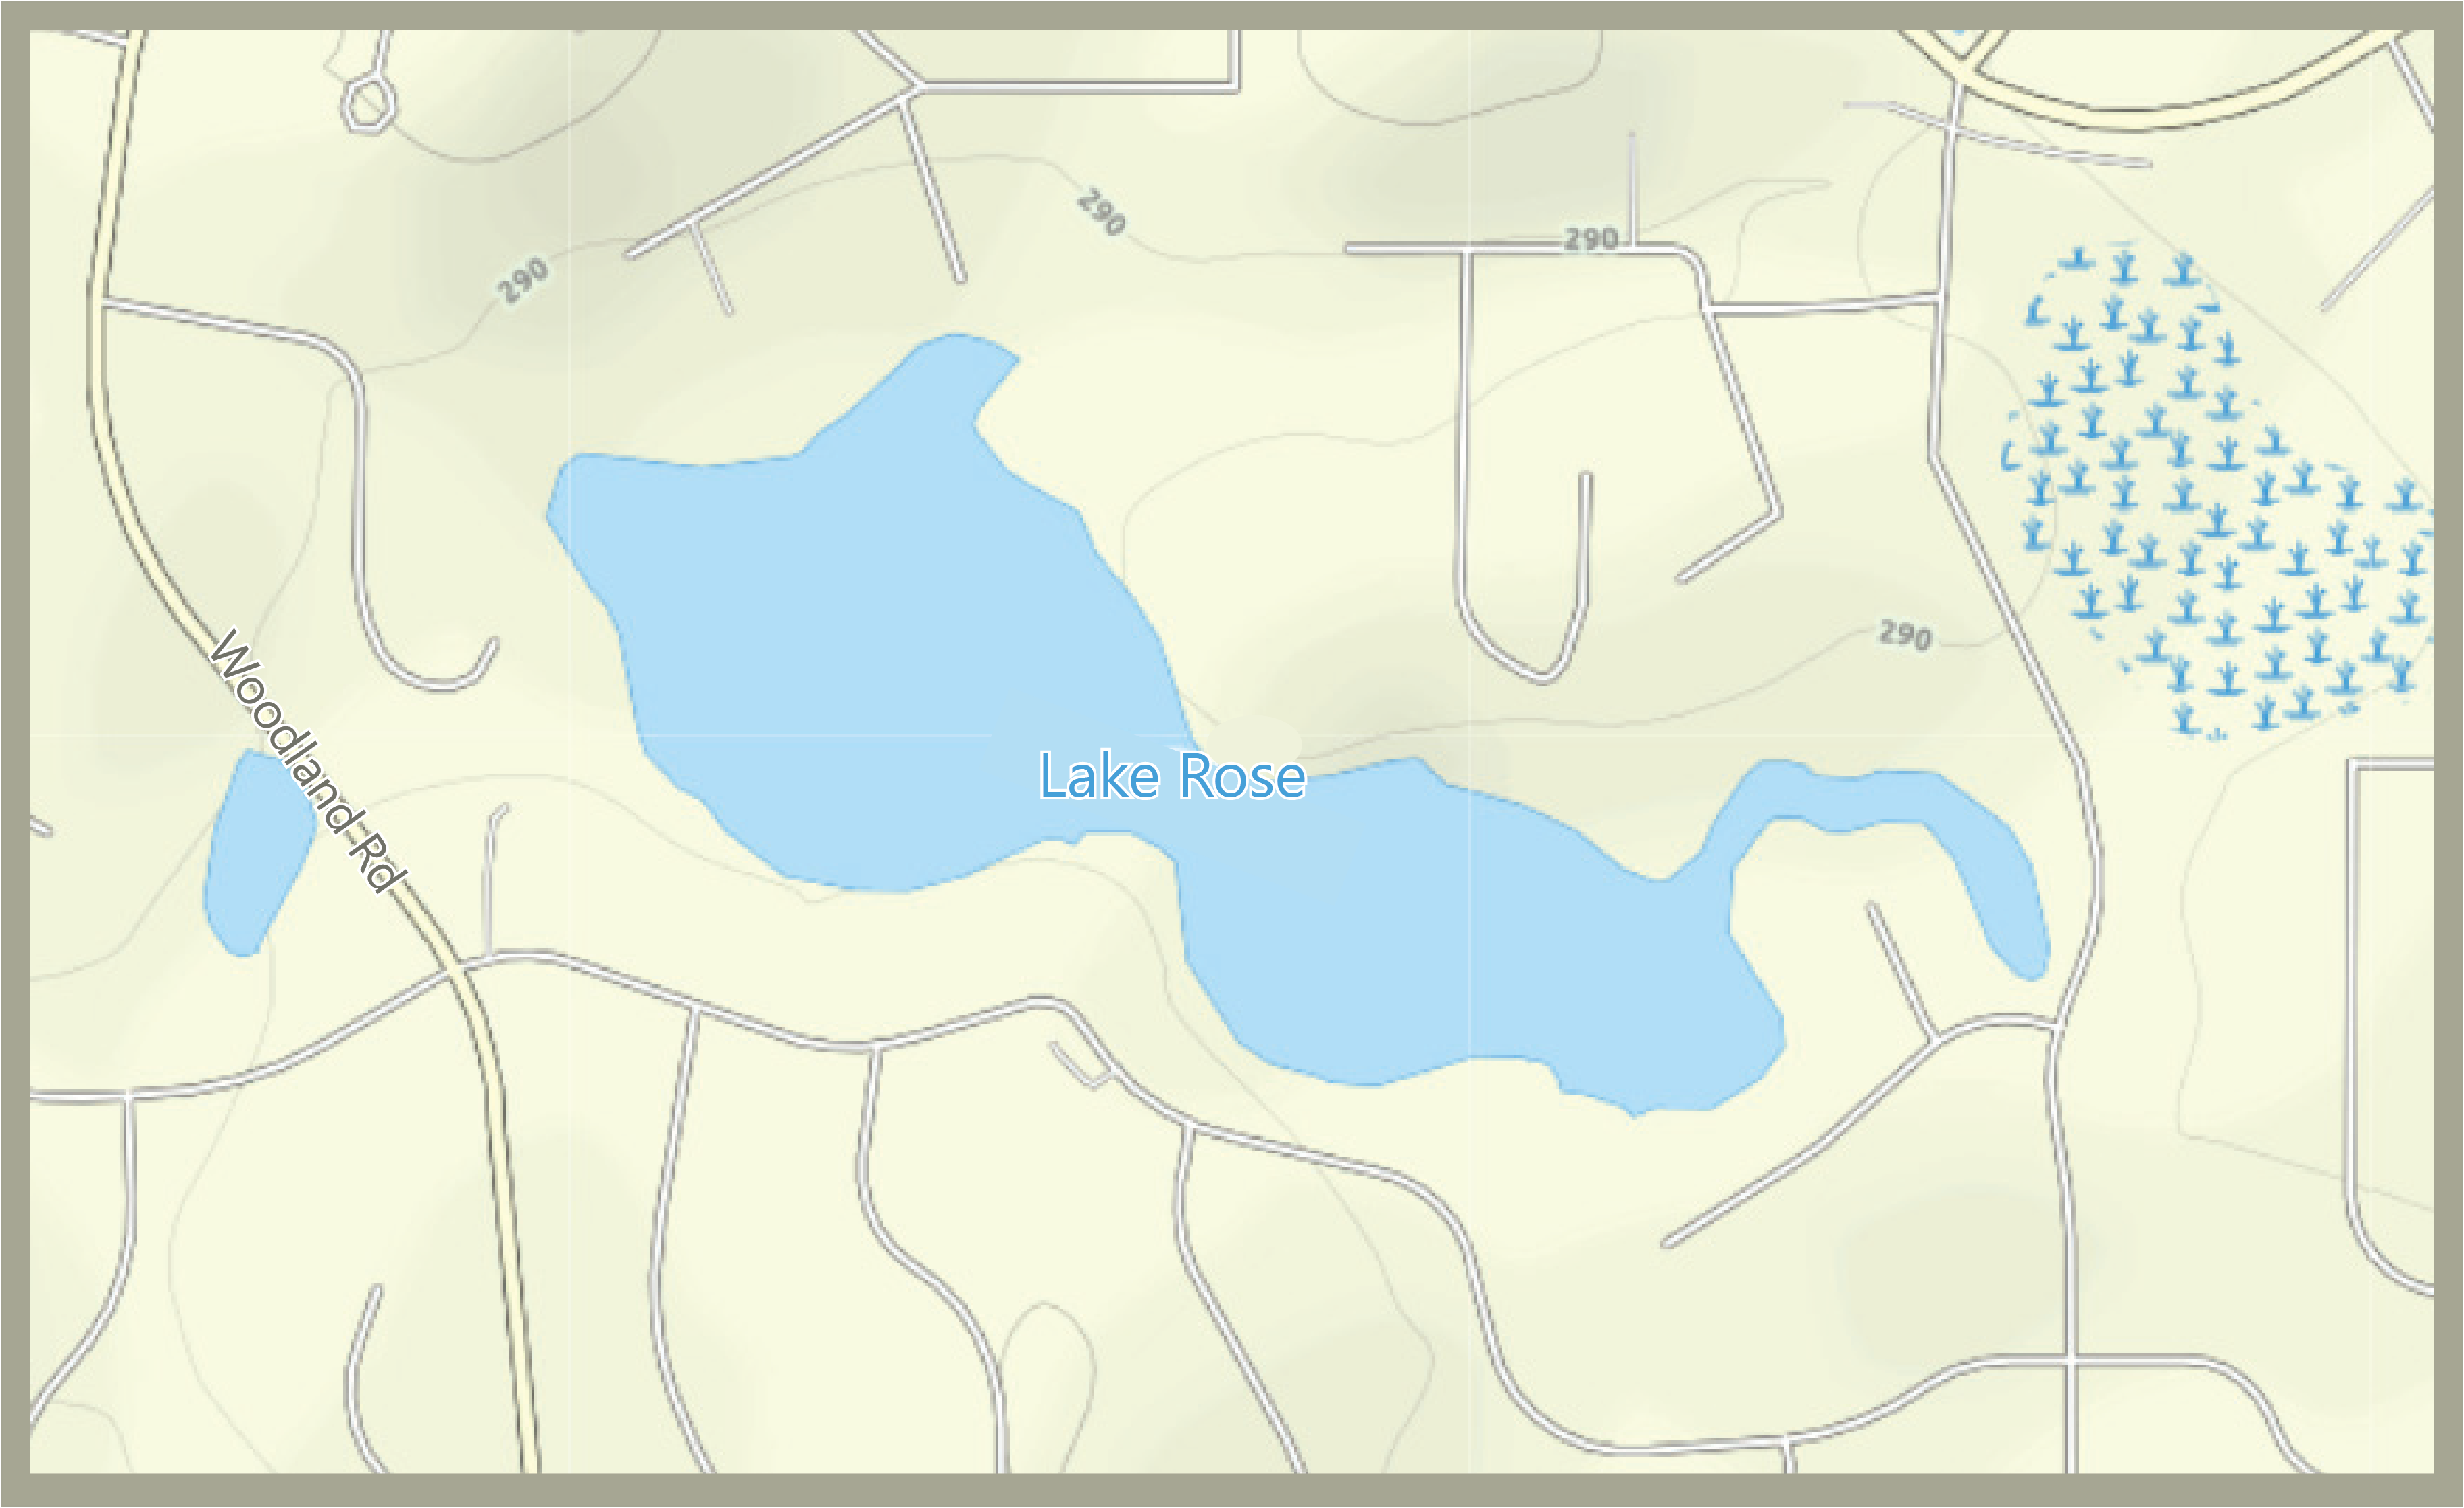 Street map of Lake Rose Area